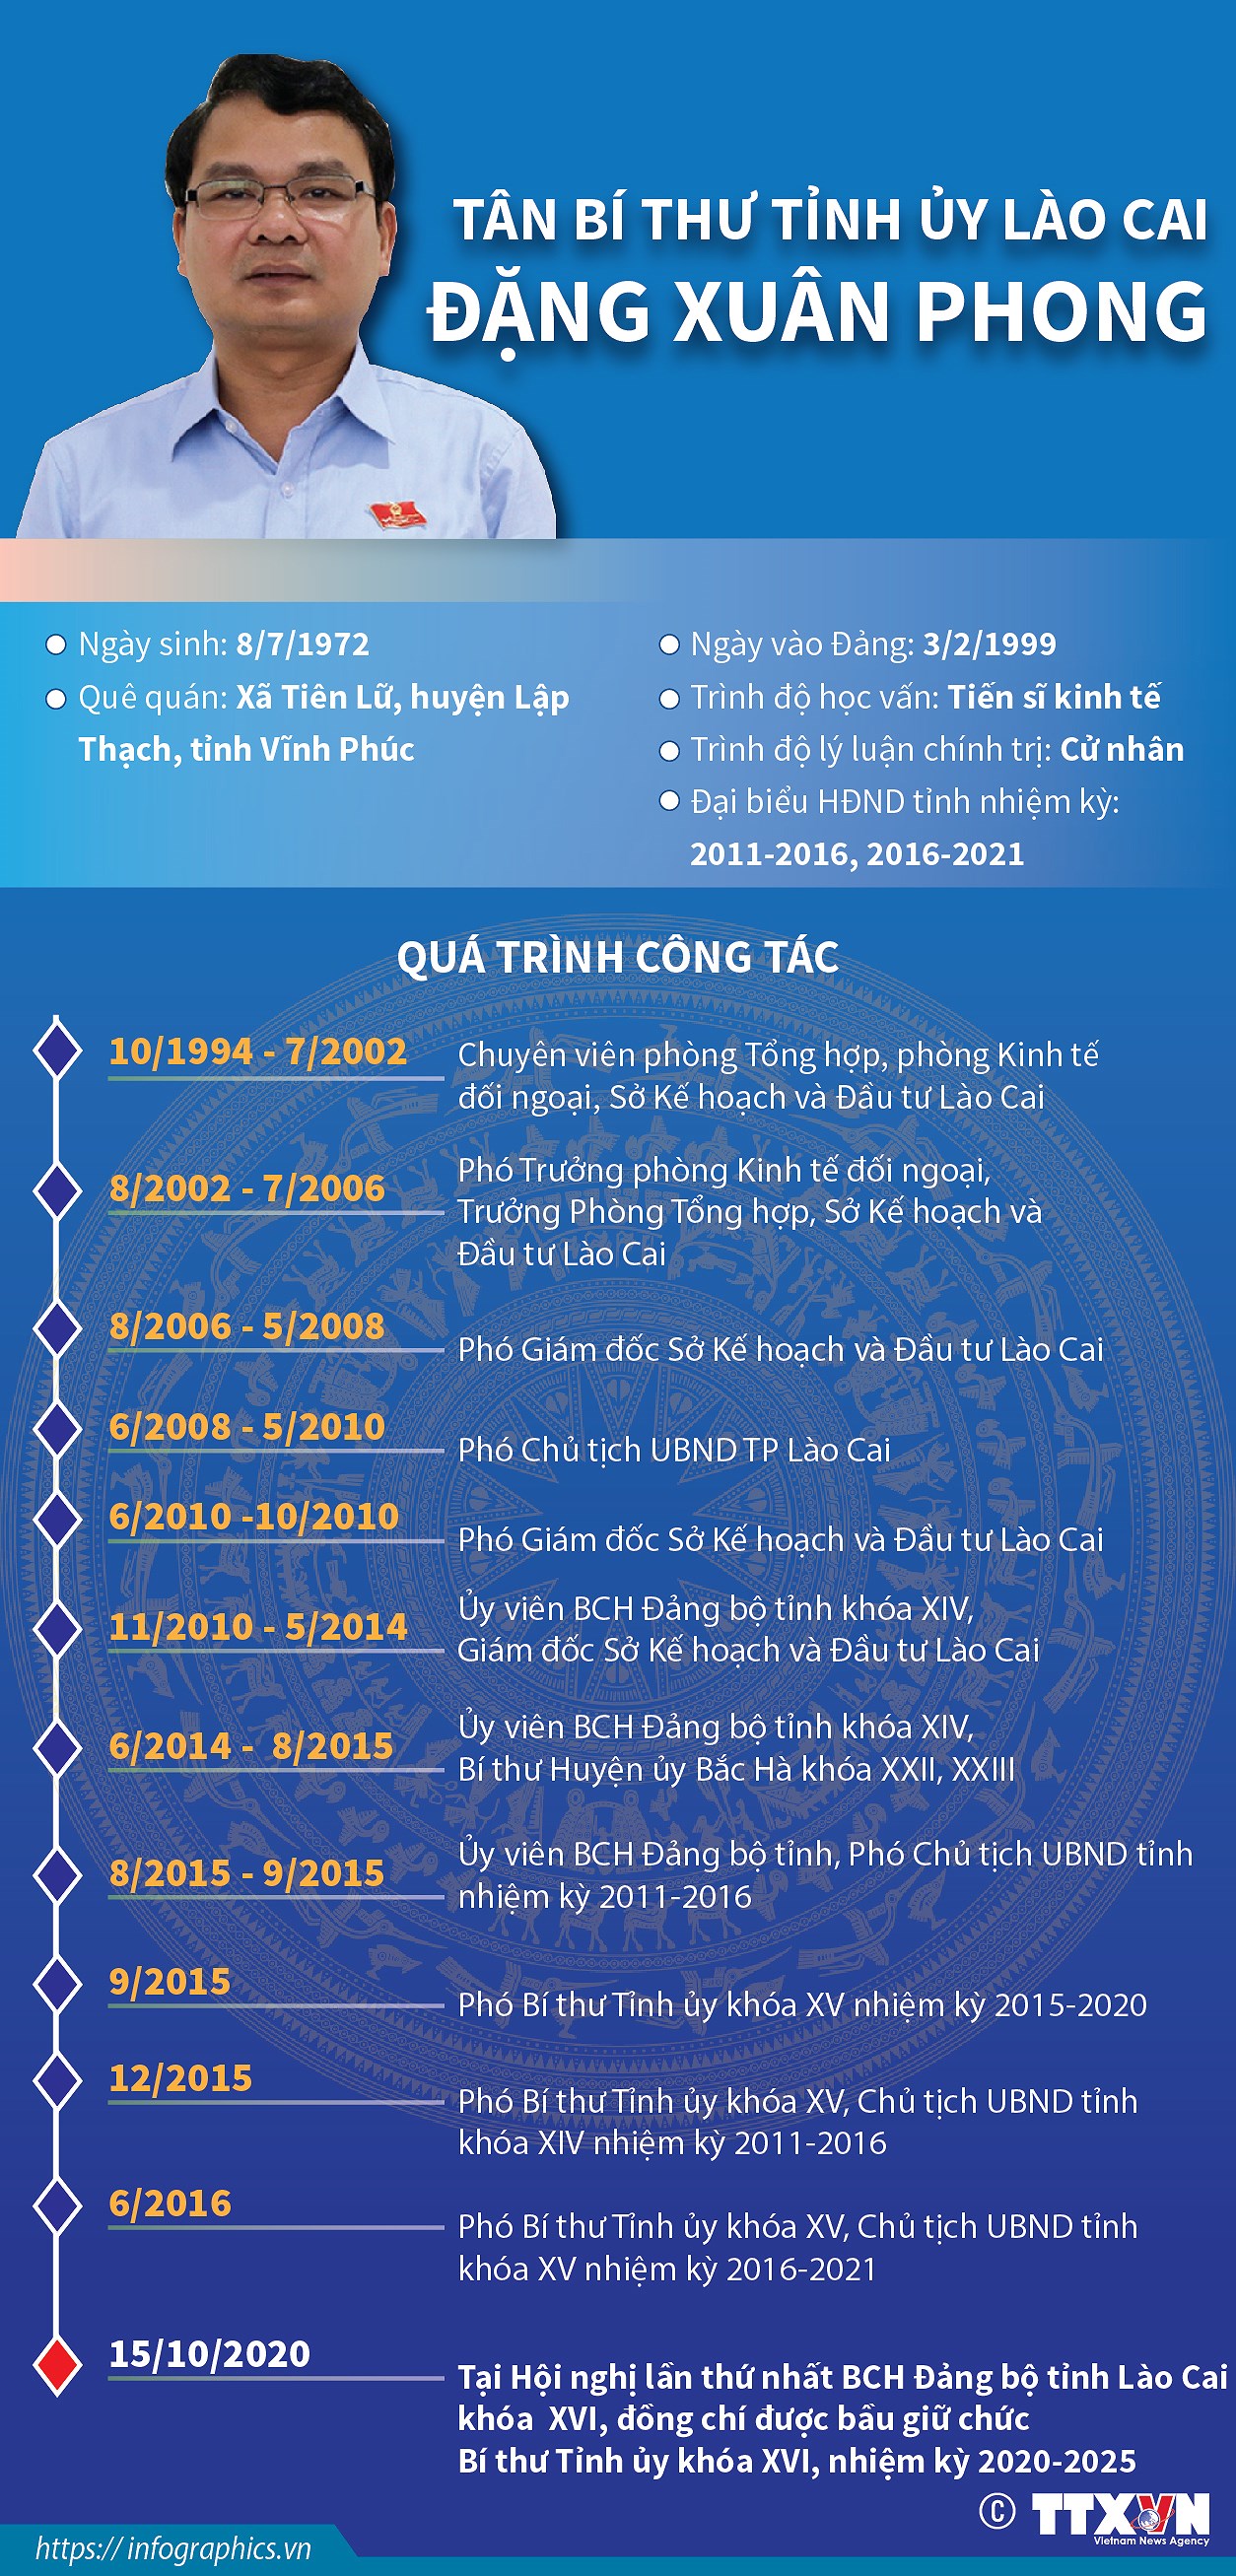 [Infographics] Tan Bi thu Tinh uy Lao Cai Dang Xuan Phong hinh anh 1